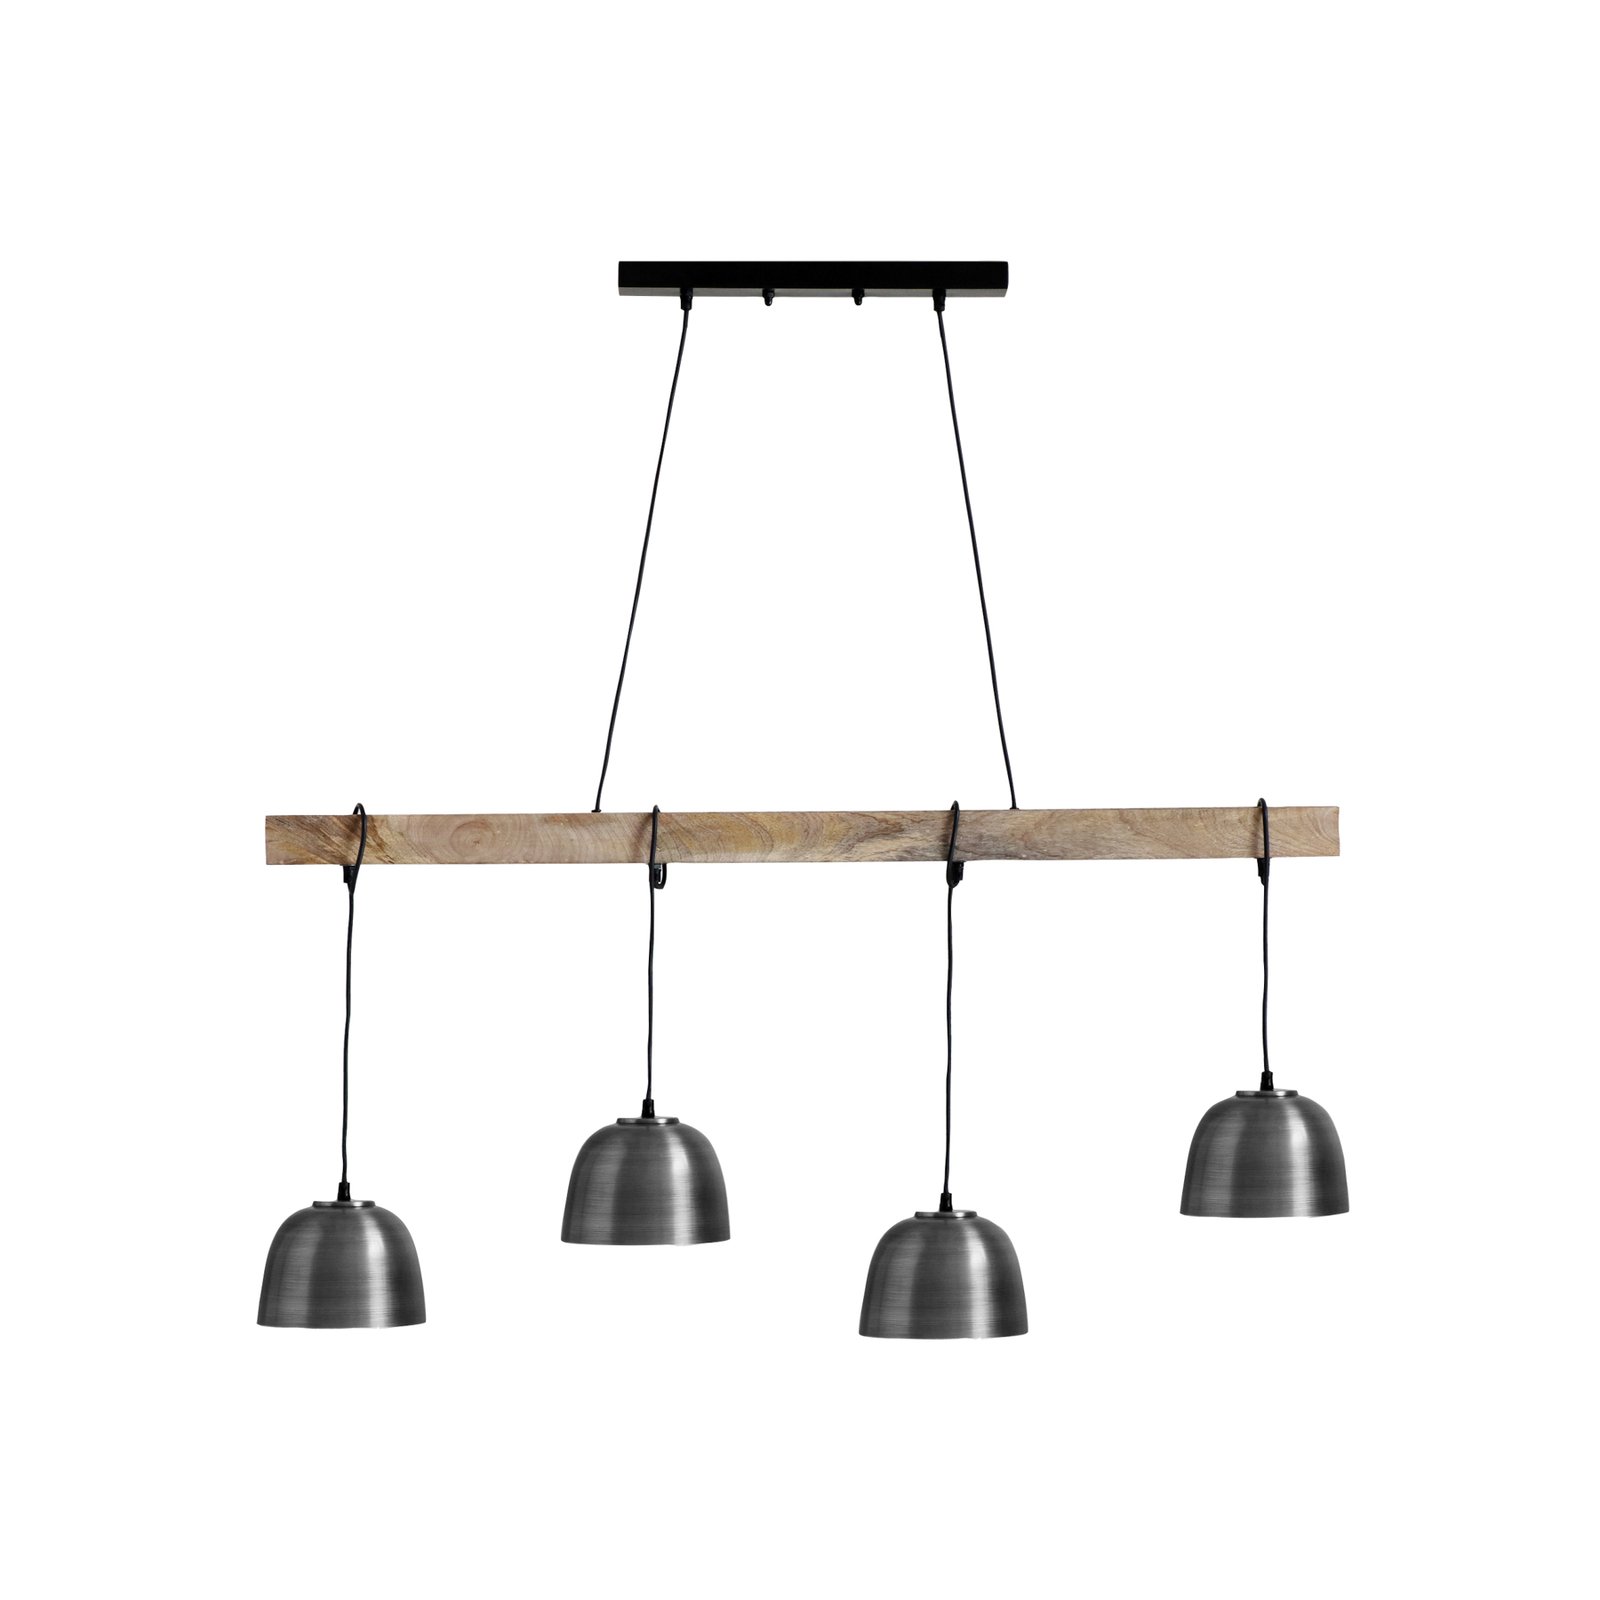 Hanglamp Hermi I balken hangend, 4-lamps, grijs